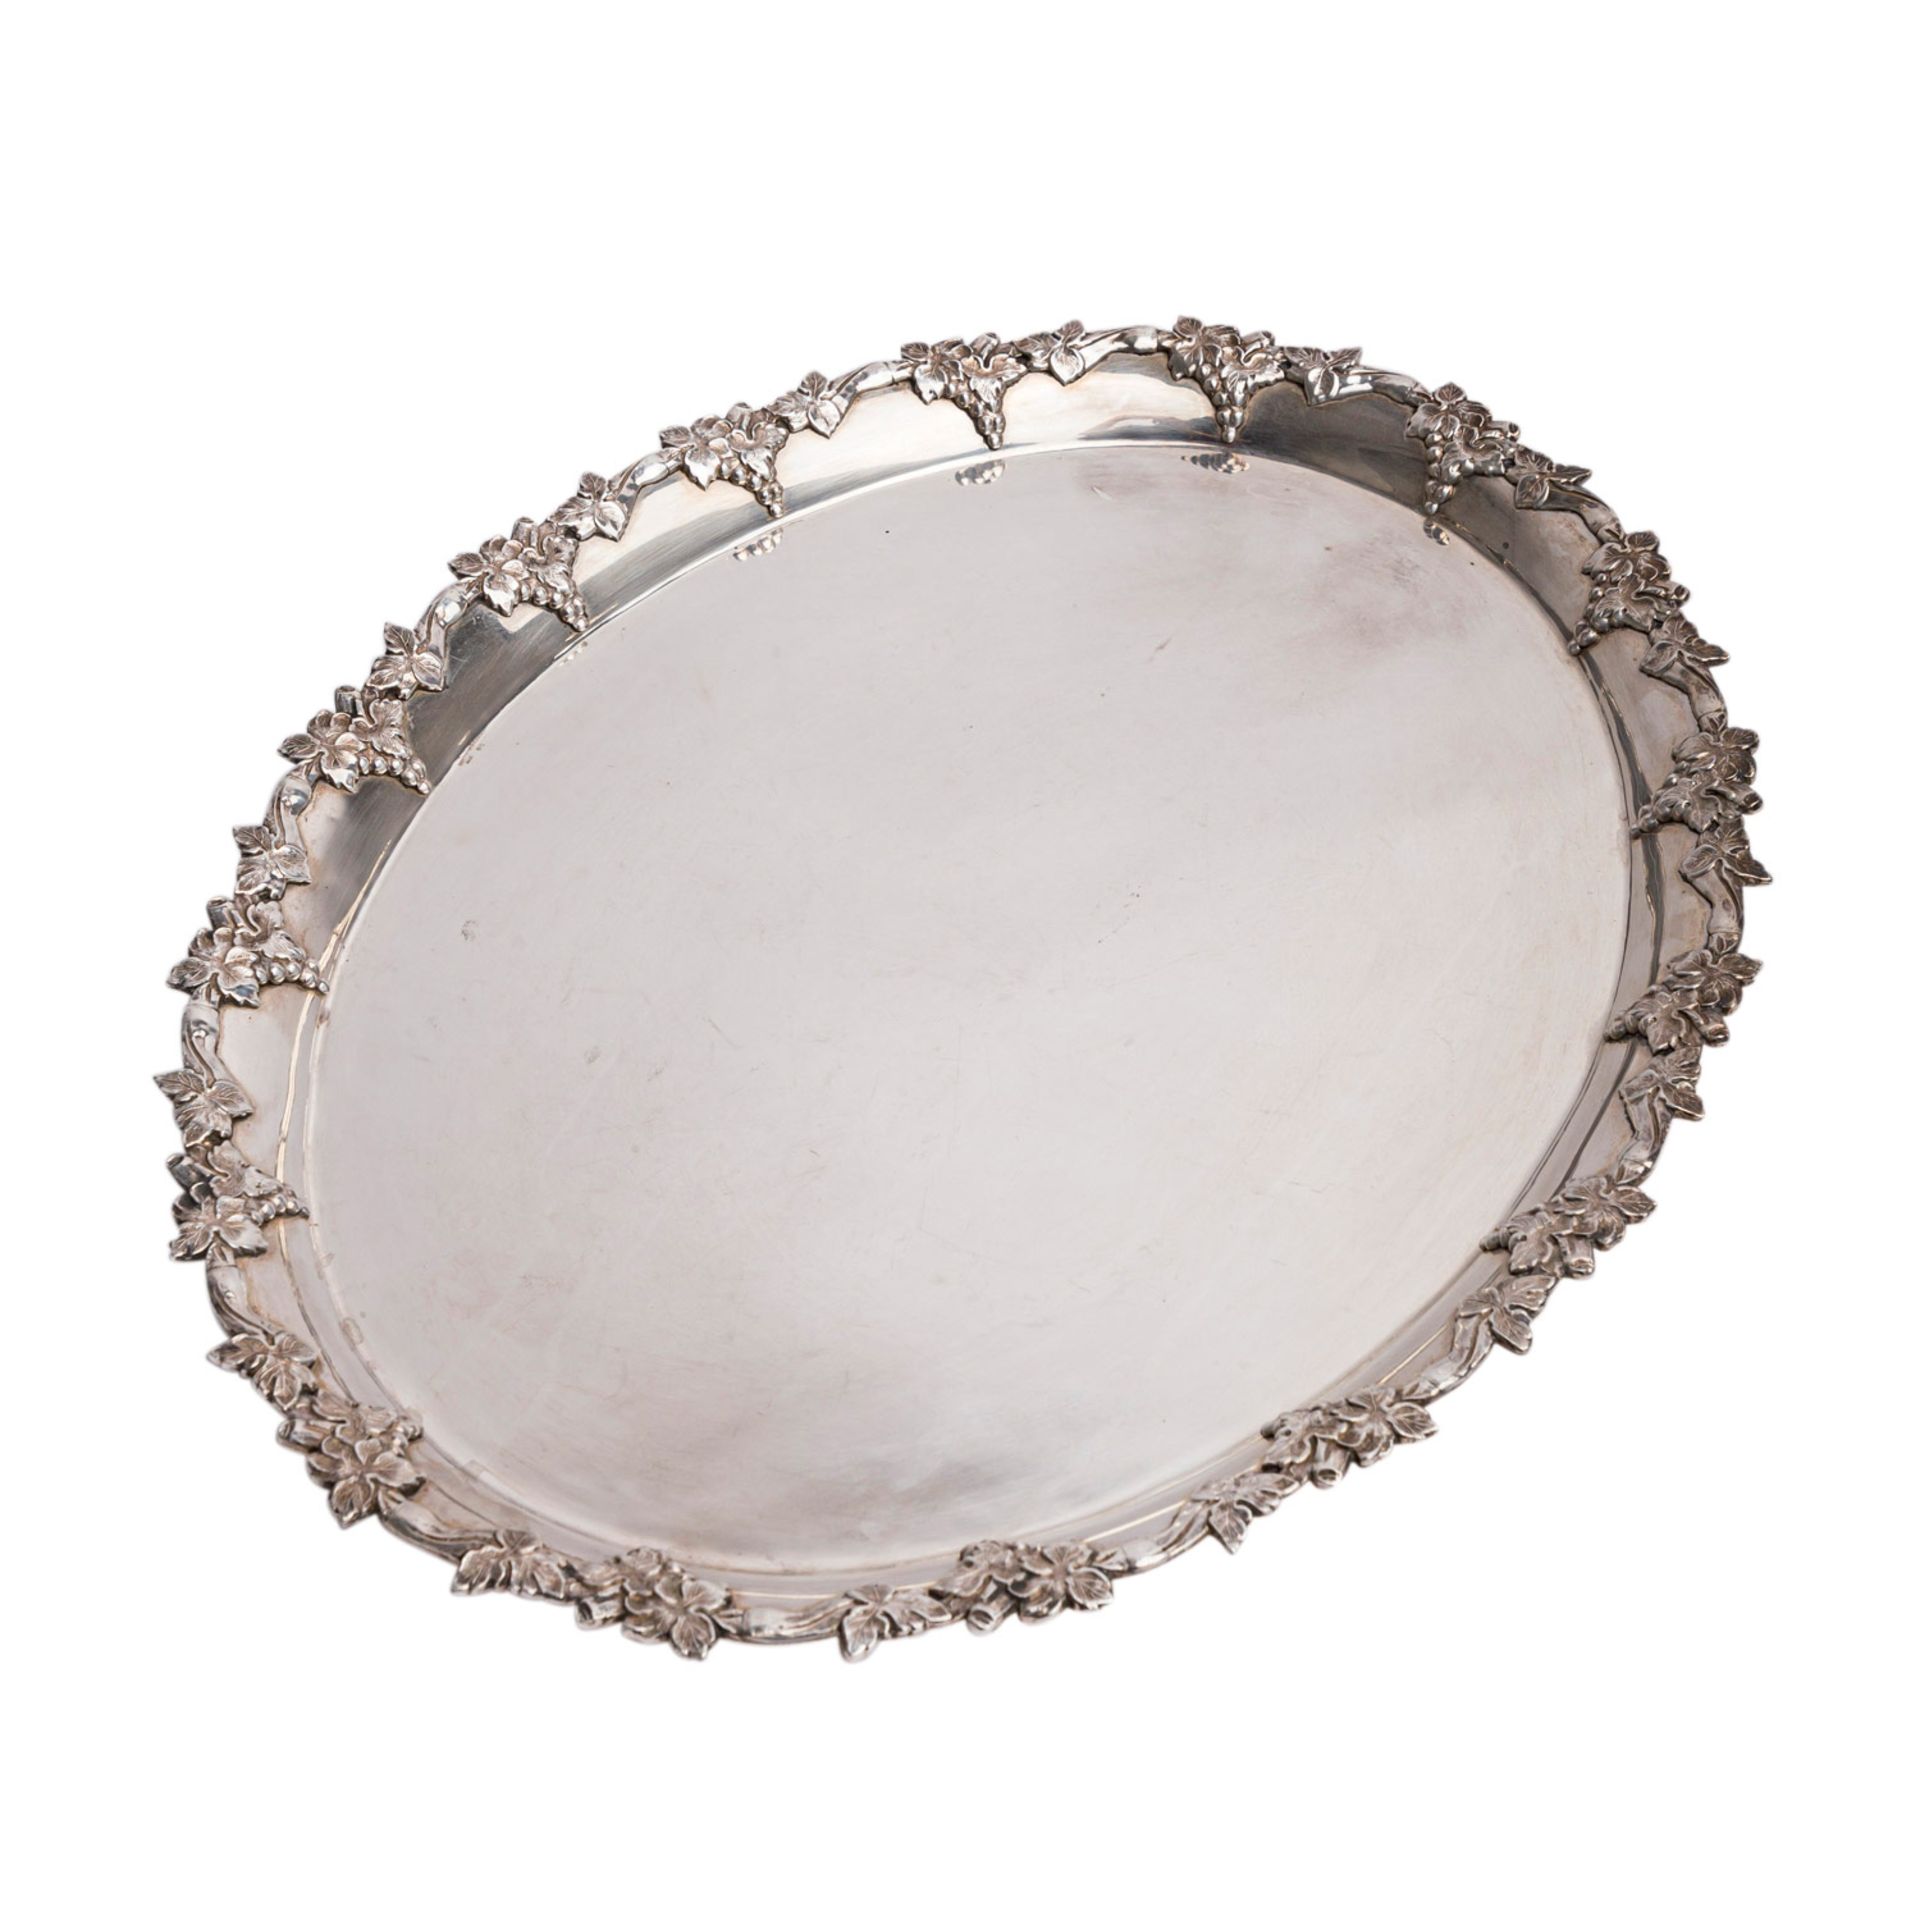 Wohl GRIECHENLAND ovale Platte, 20. Jh.glatter Spiegel, reliefierter und ziselierter Weinlaubdekor